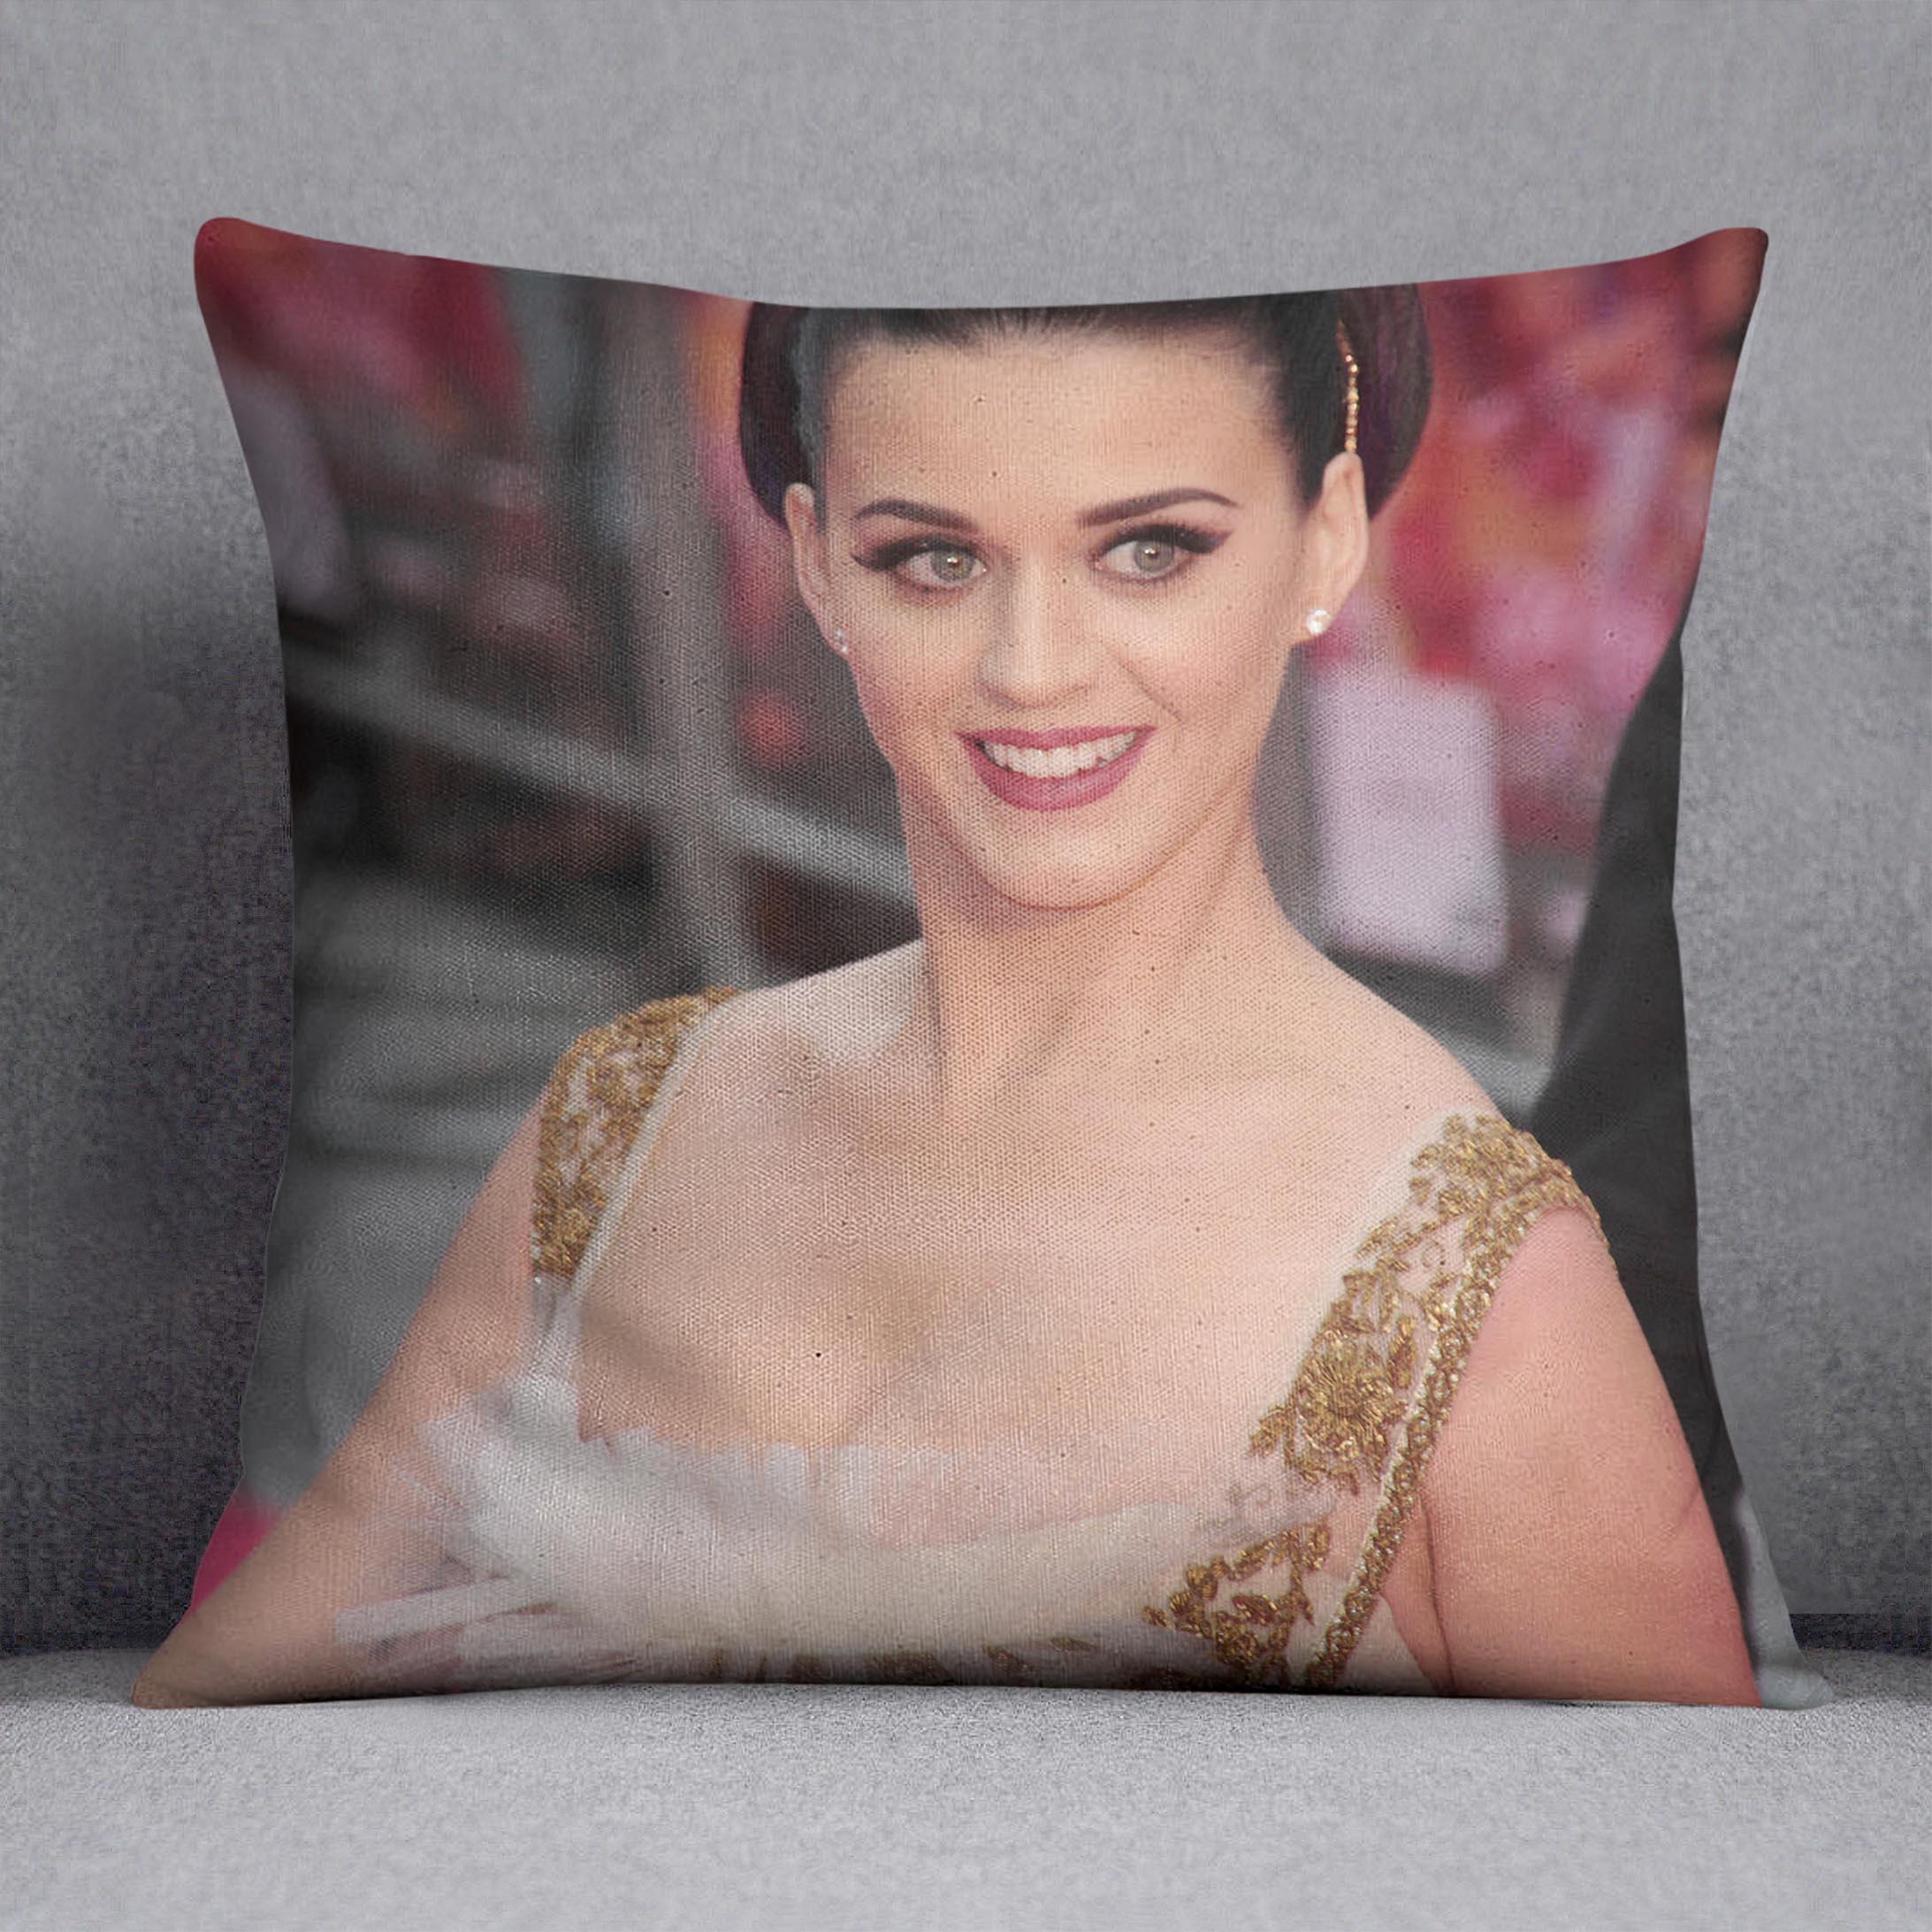 Katy Perry at awards Cushion